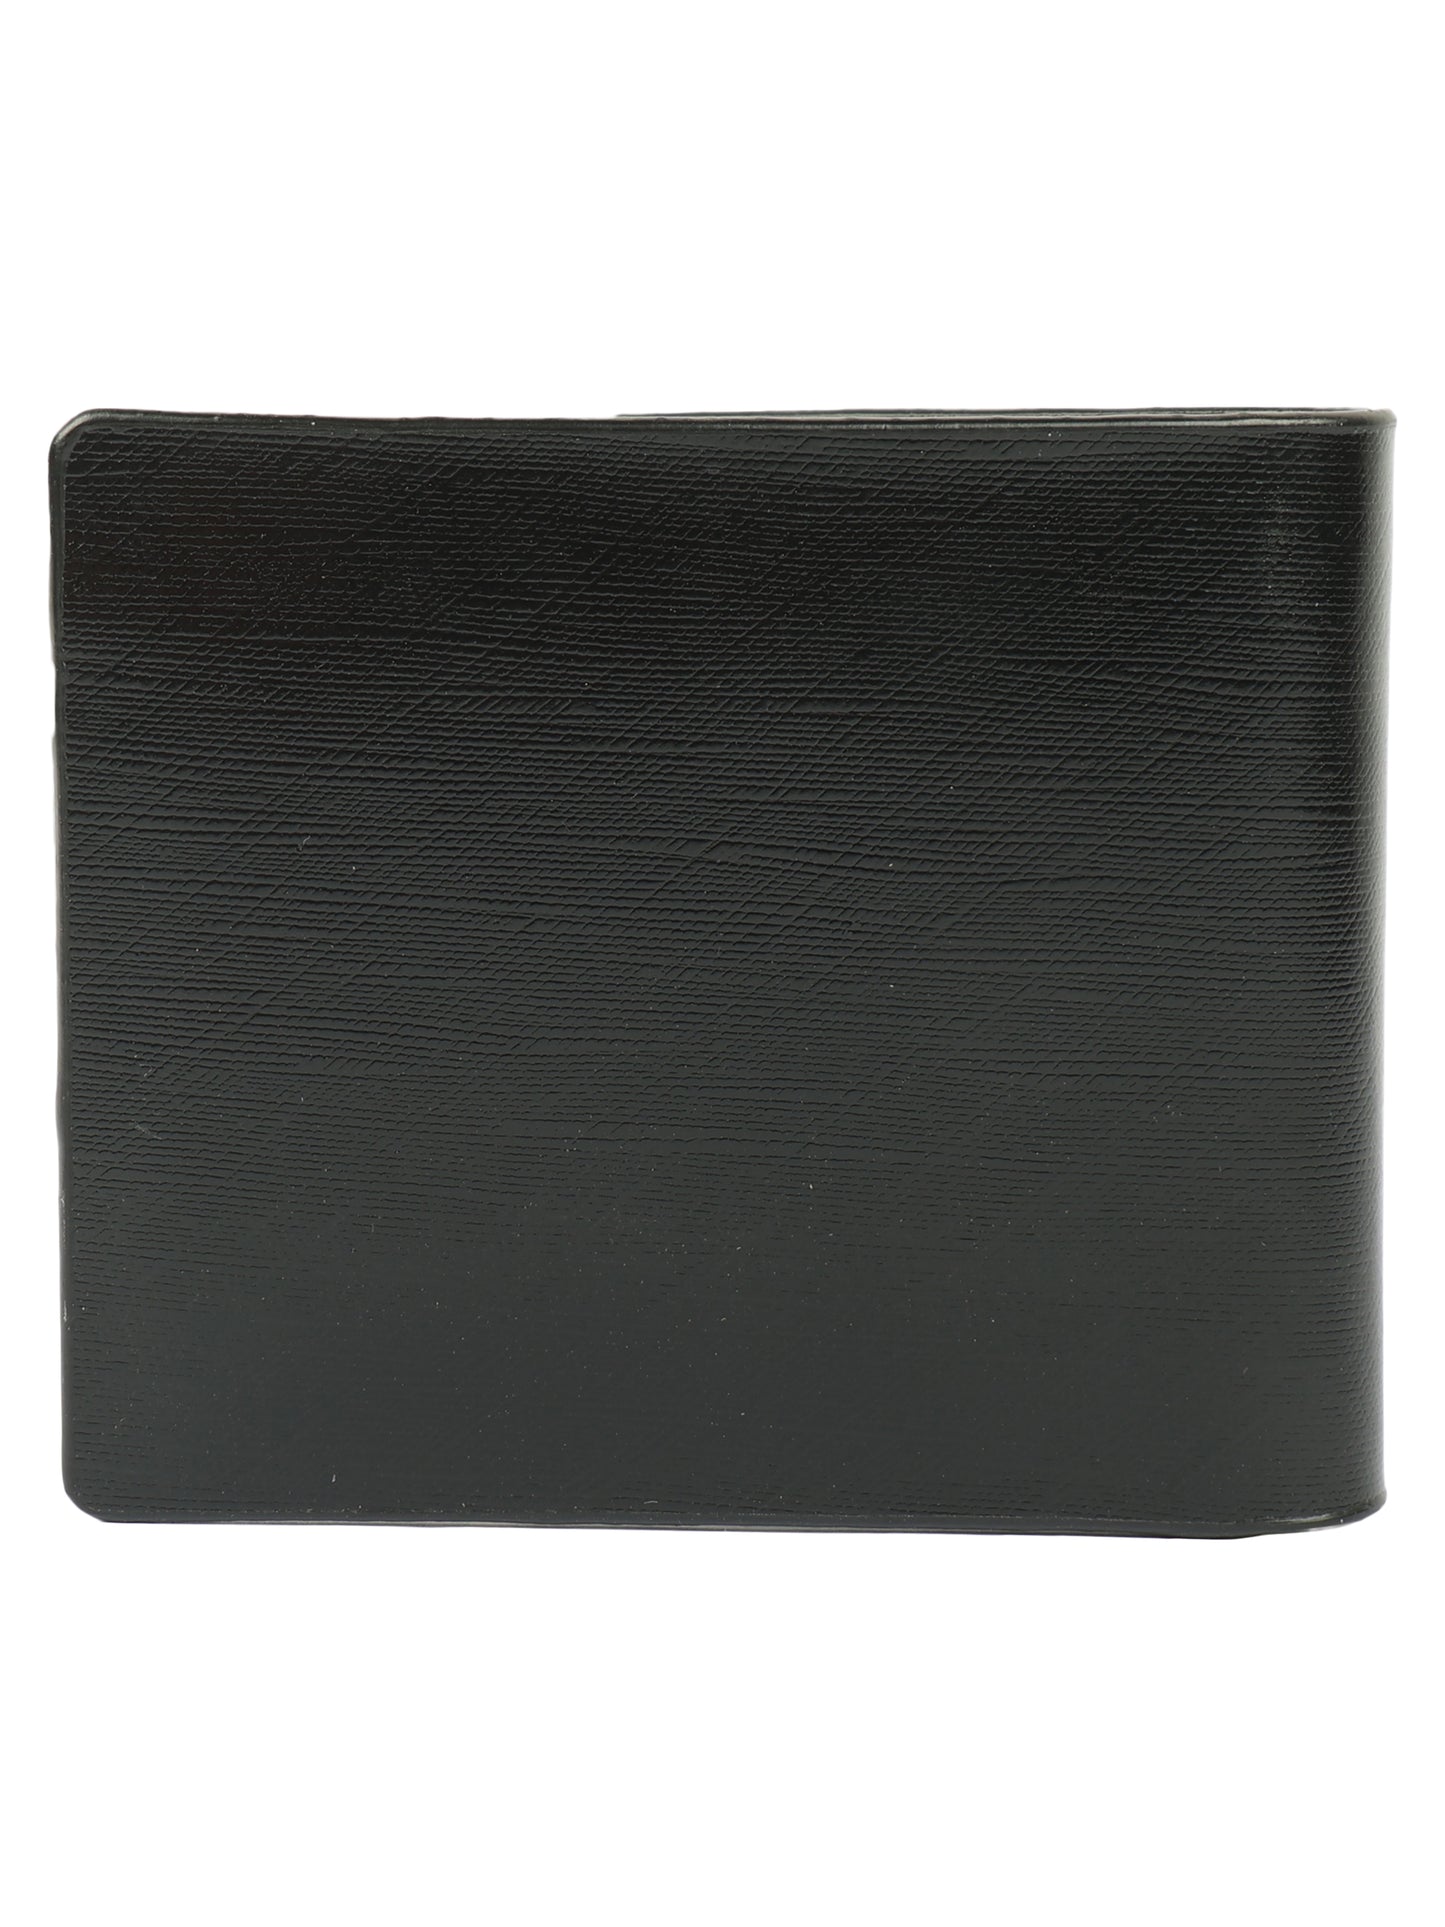 Alvaro Castagnino Men's Green Color Leather Wallet